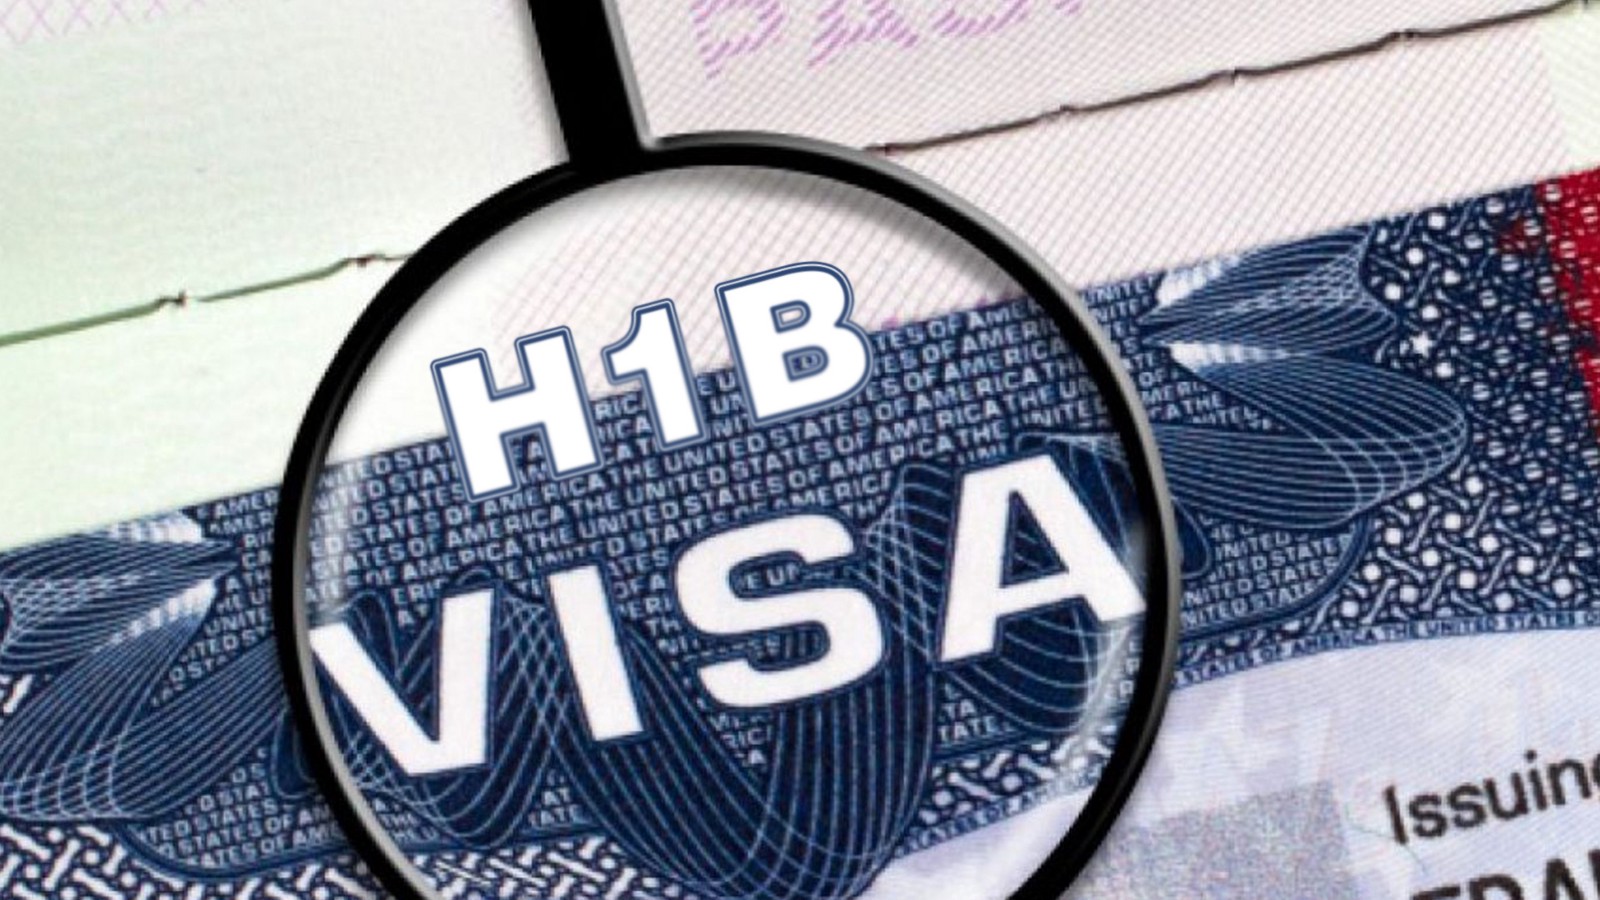 Các ứng viên EB-5 hầu hết đều xin visa H-1B trước khi bắt đầu quy trình xin visa EB-5 nhằm mục đích cư trú hợp pháp tại Mỹ trước.